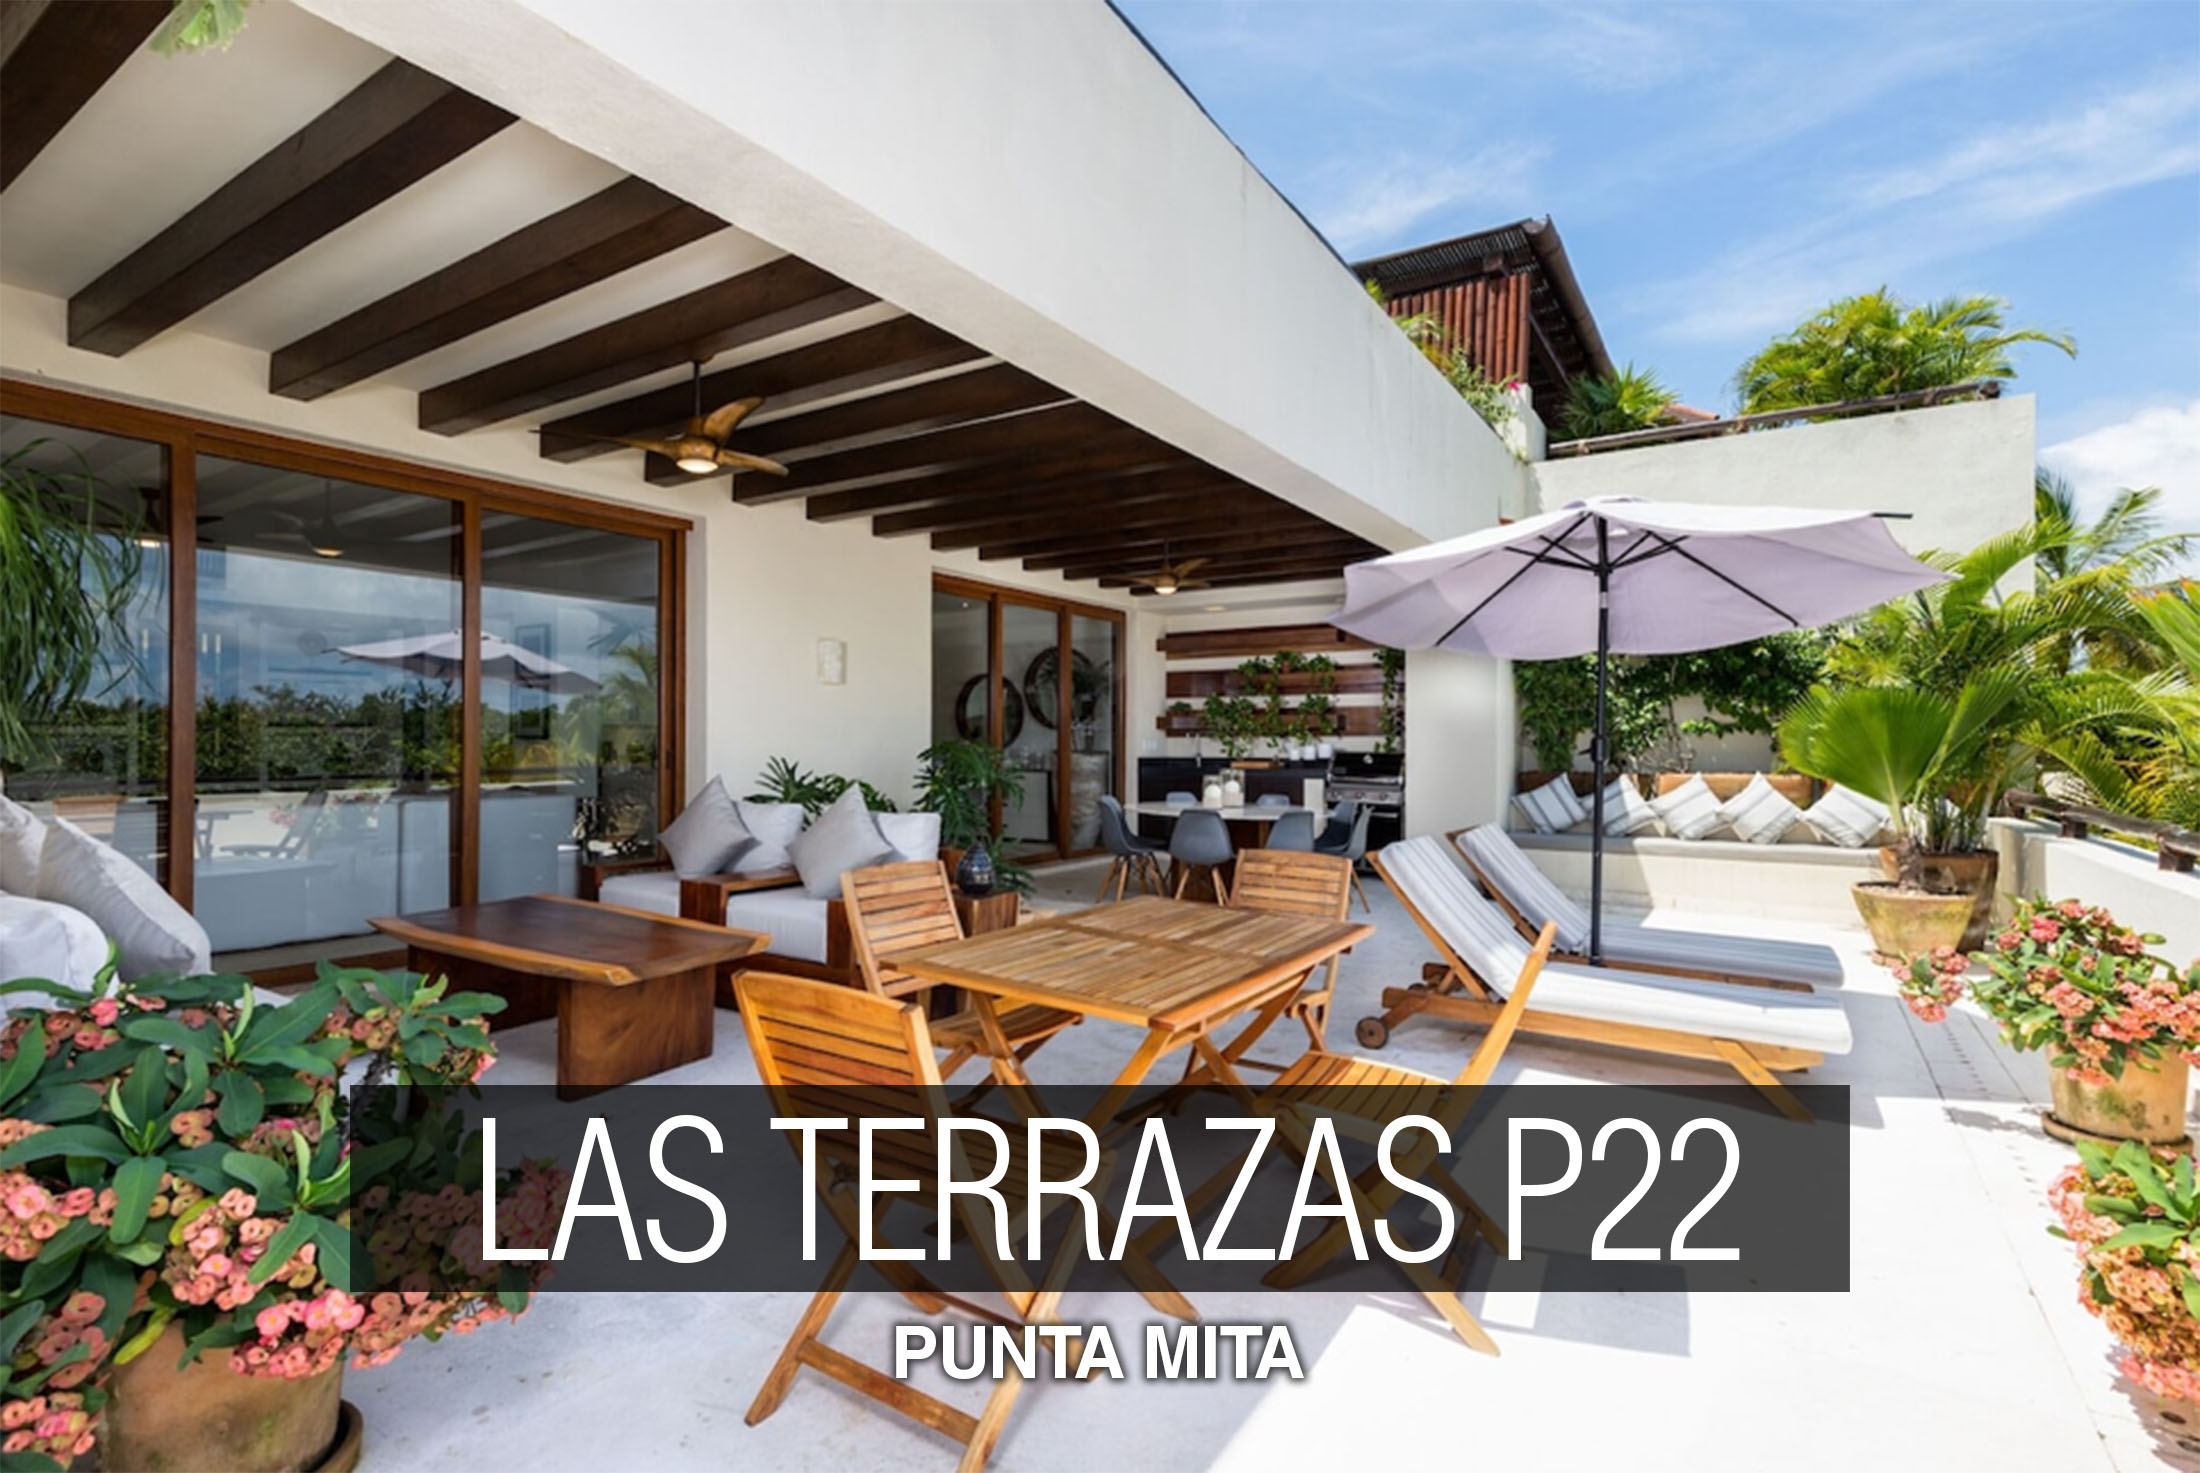 las-terrazas-p22-punta-mita-real-estate-for-sale